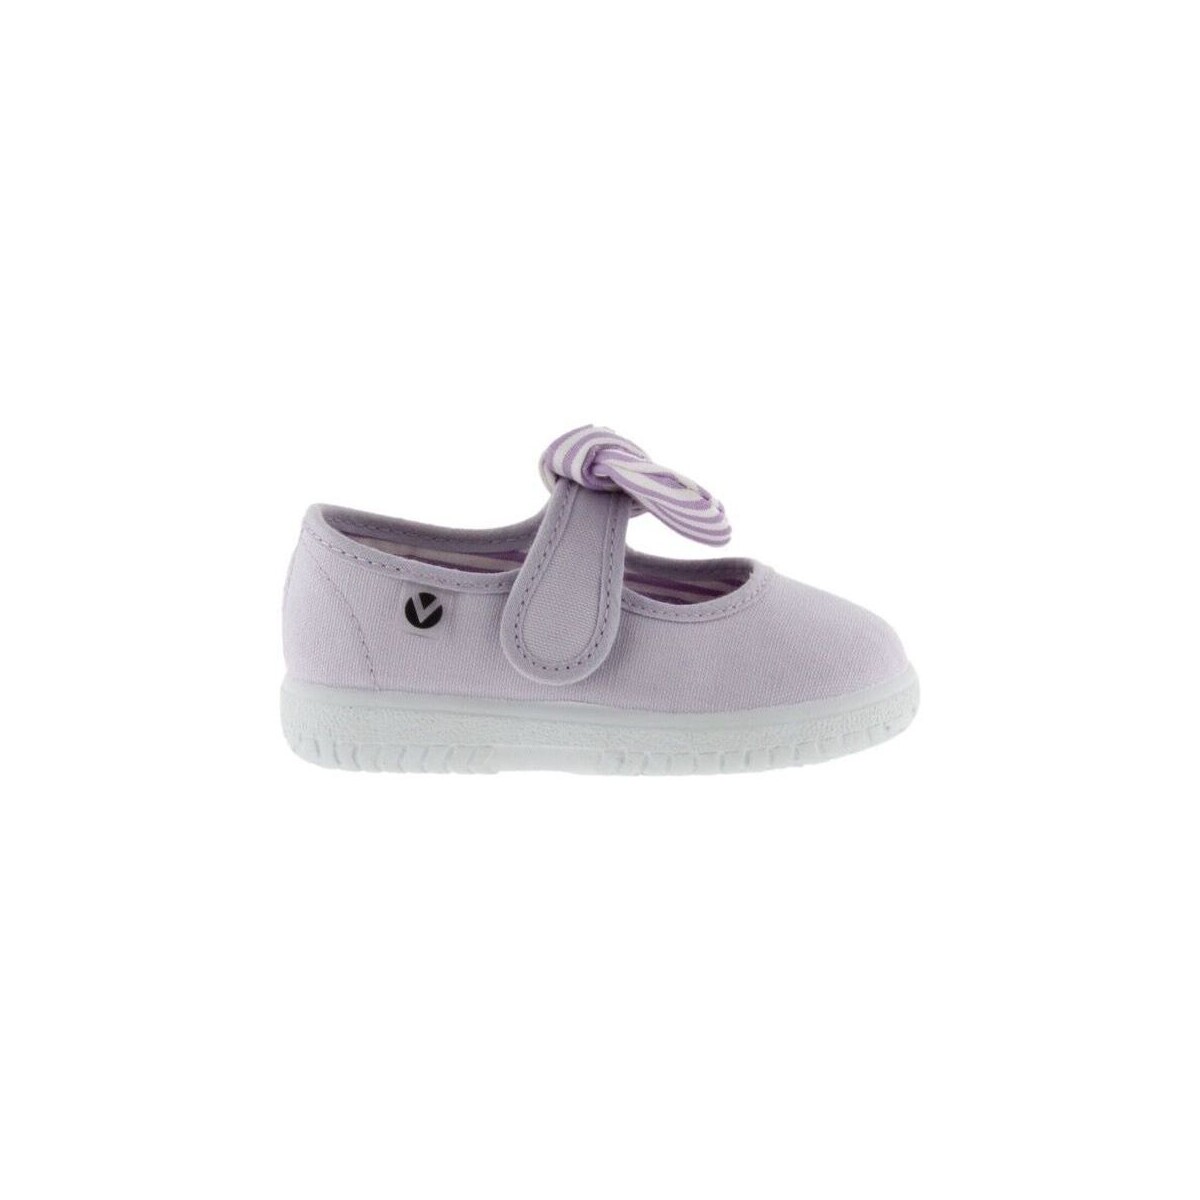 Sapatos Criança Sapatos Victoria Sapatos Bebé 05110 - Lirio Violeta